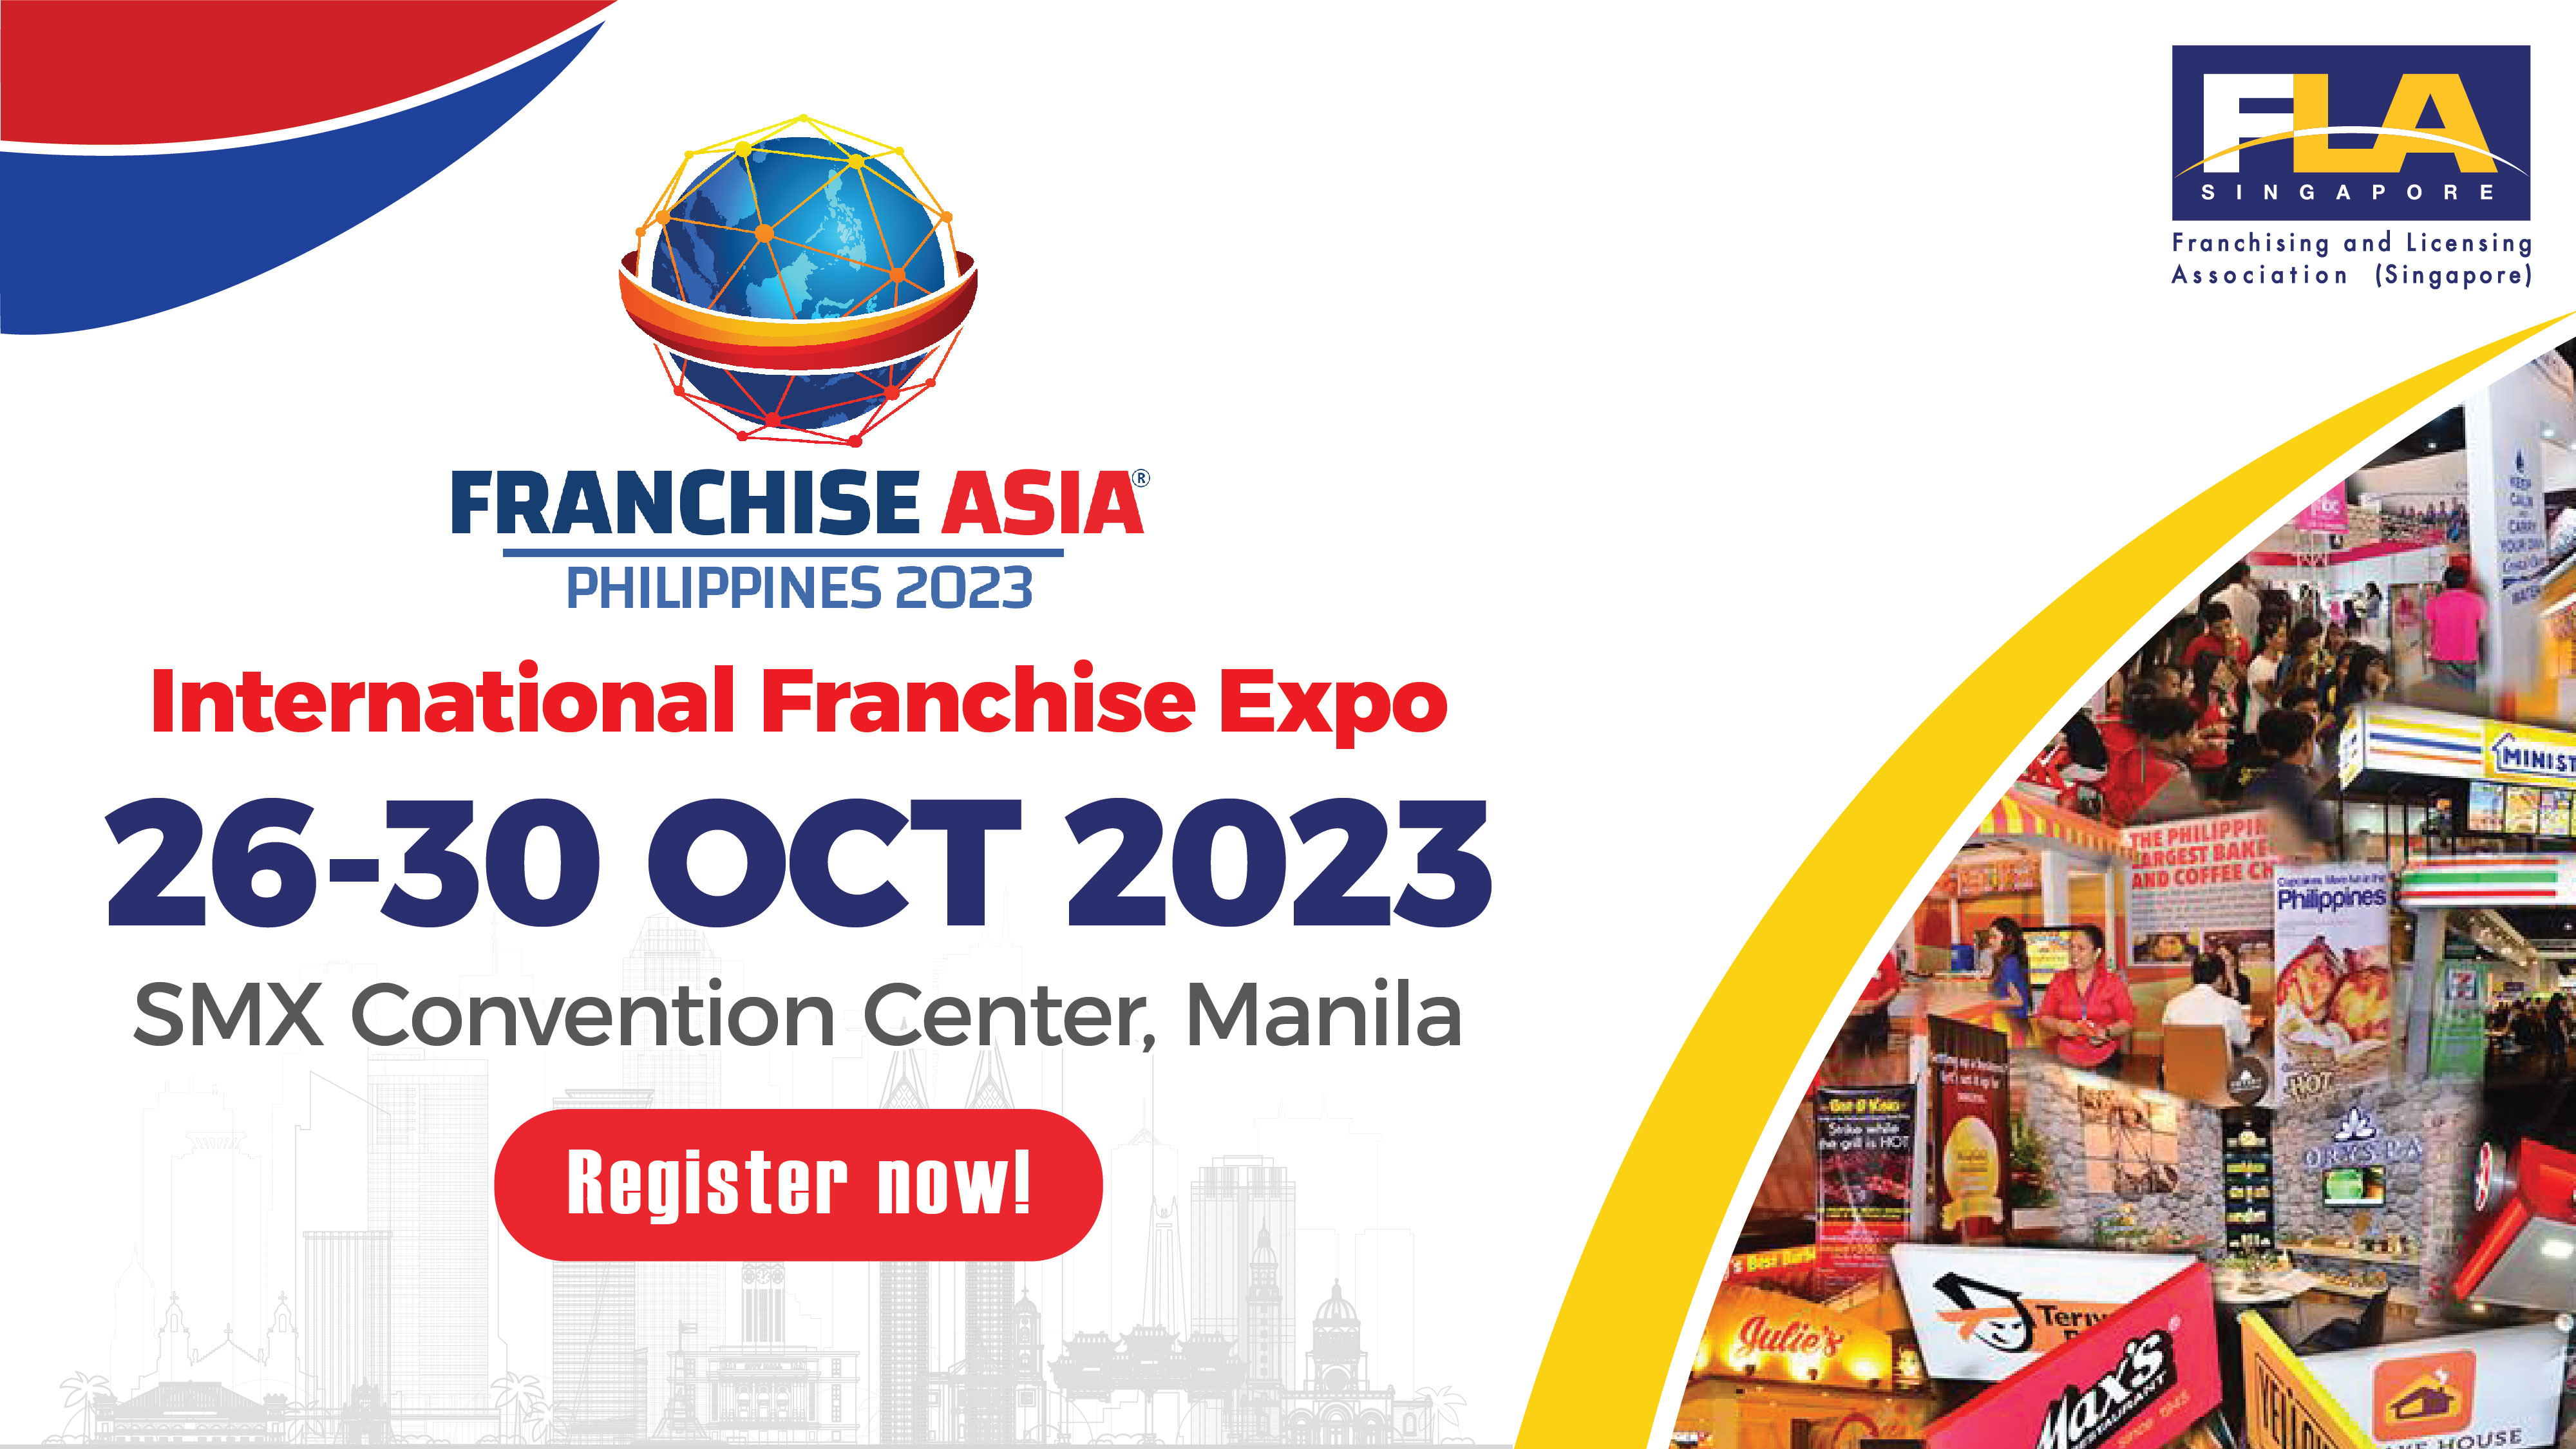 Franchise Asia Philippines 2023 | International Franchise Expo